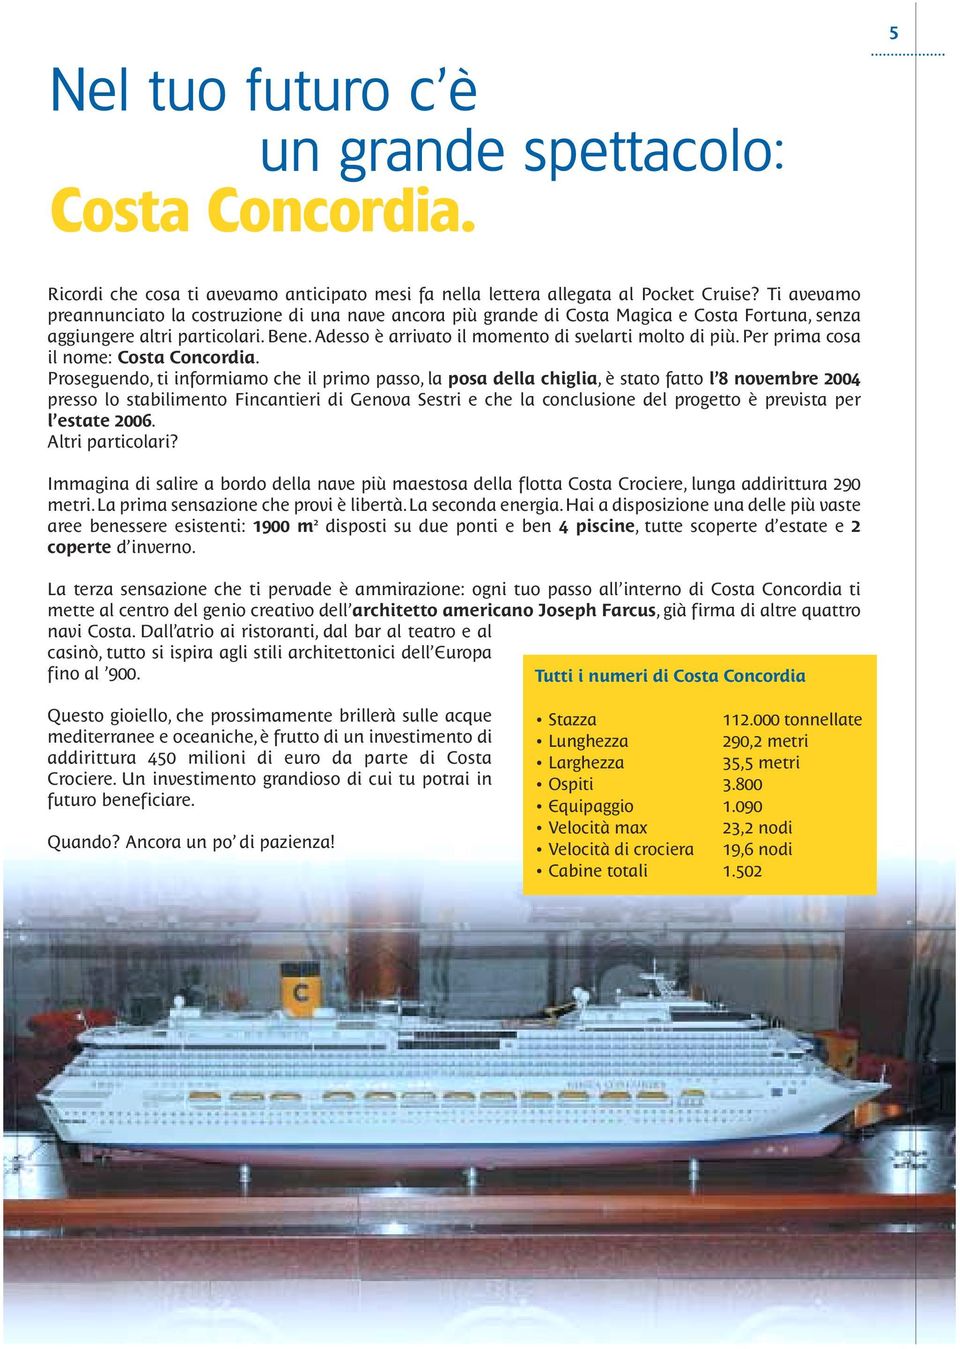 Per prima cosa il nome: Costa Concordia.